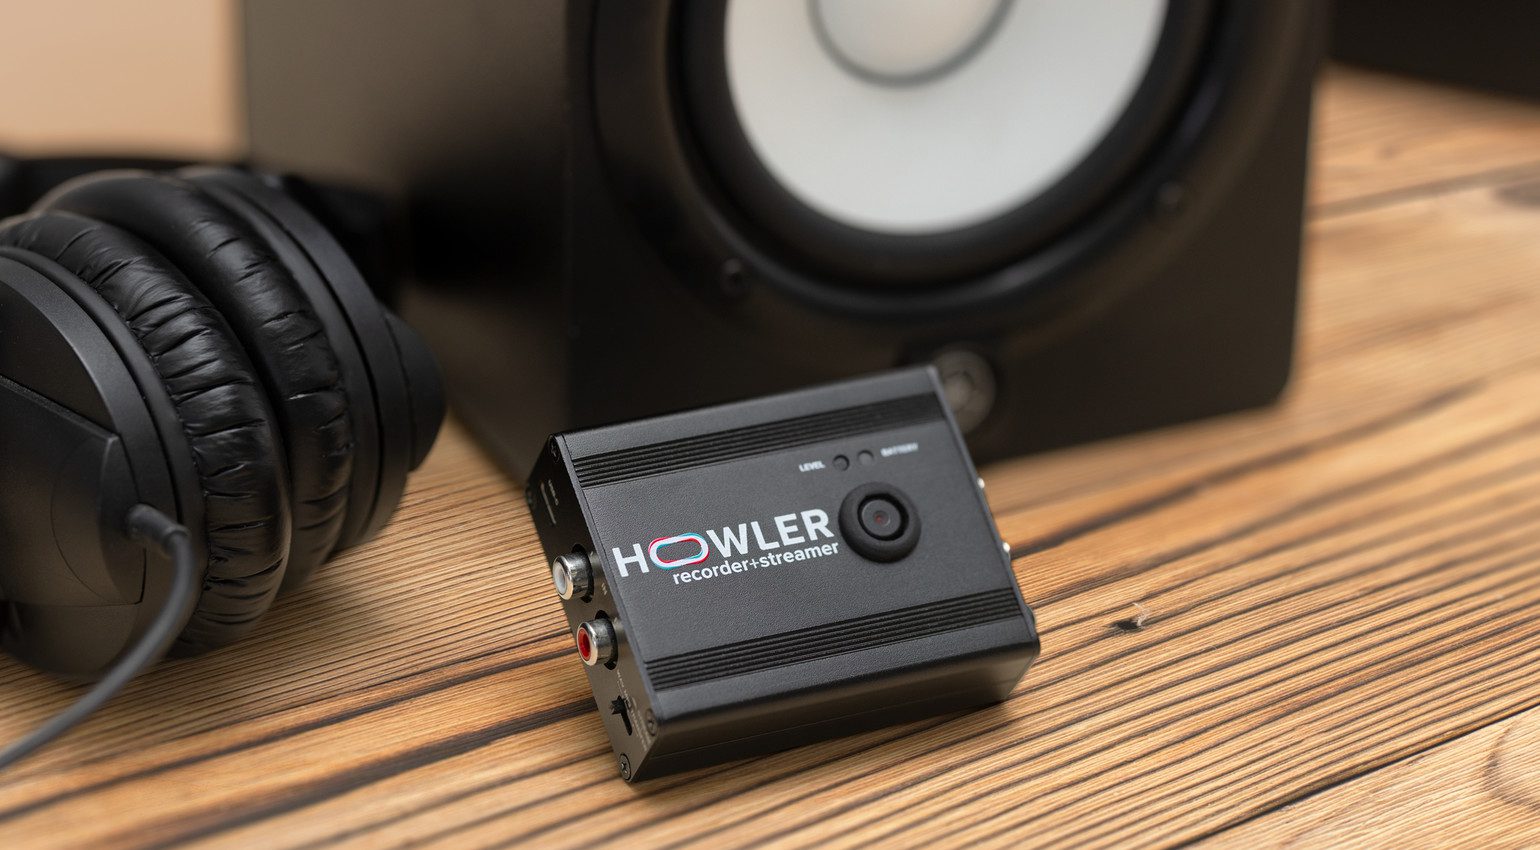 Howler bringt kompaktes Recording und Live Streaming für DJs